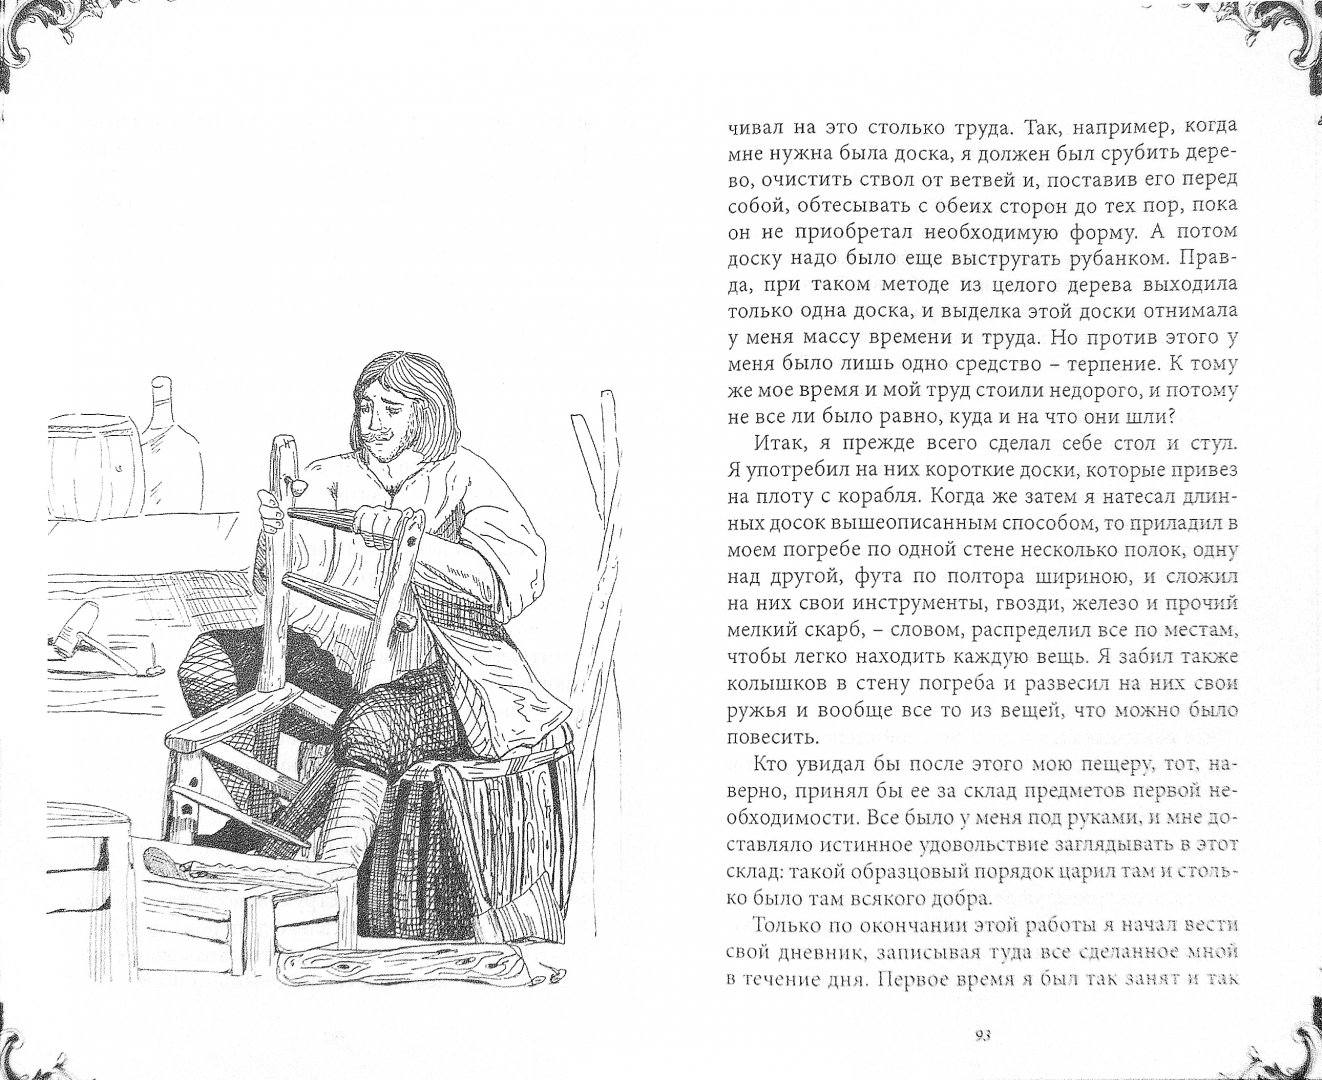 Иллюстрация 1 из 3 для Жизнь и удивительные приключения Робинзона Крузо - Даниель Дефо | Лабиринт - книги. Источник: Лабиринт